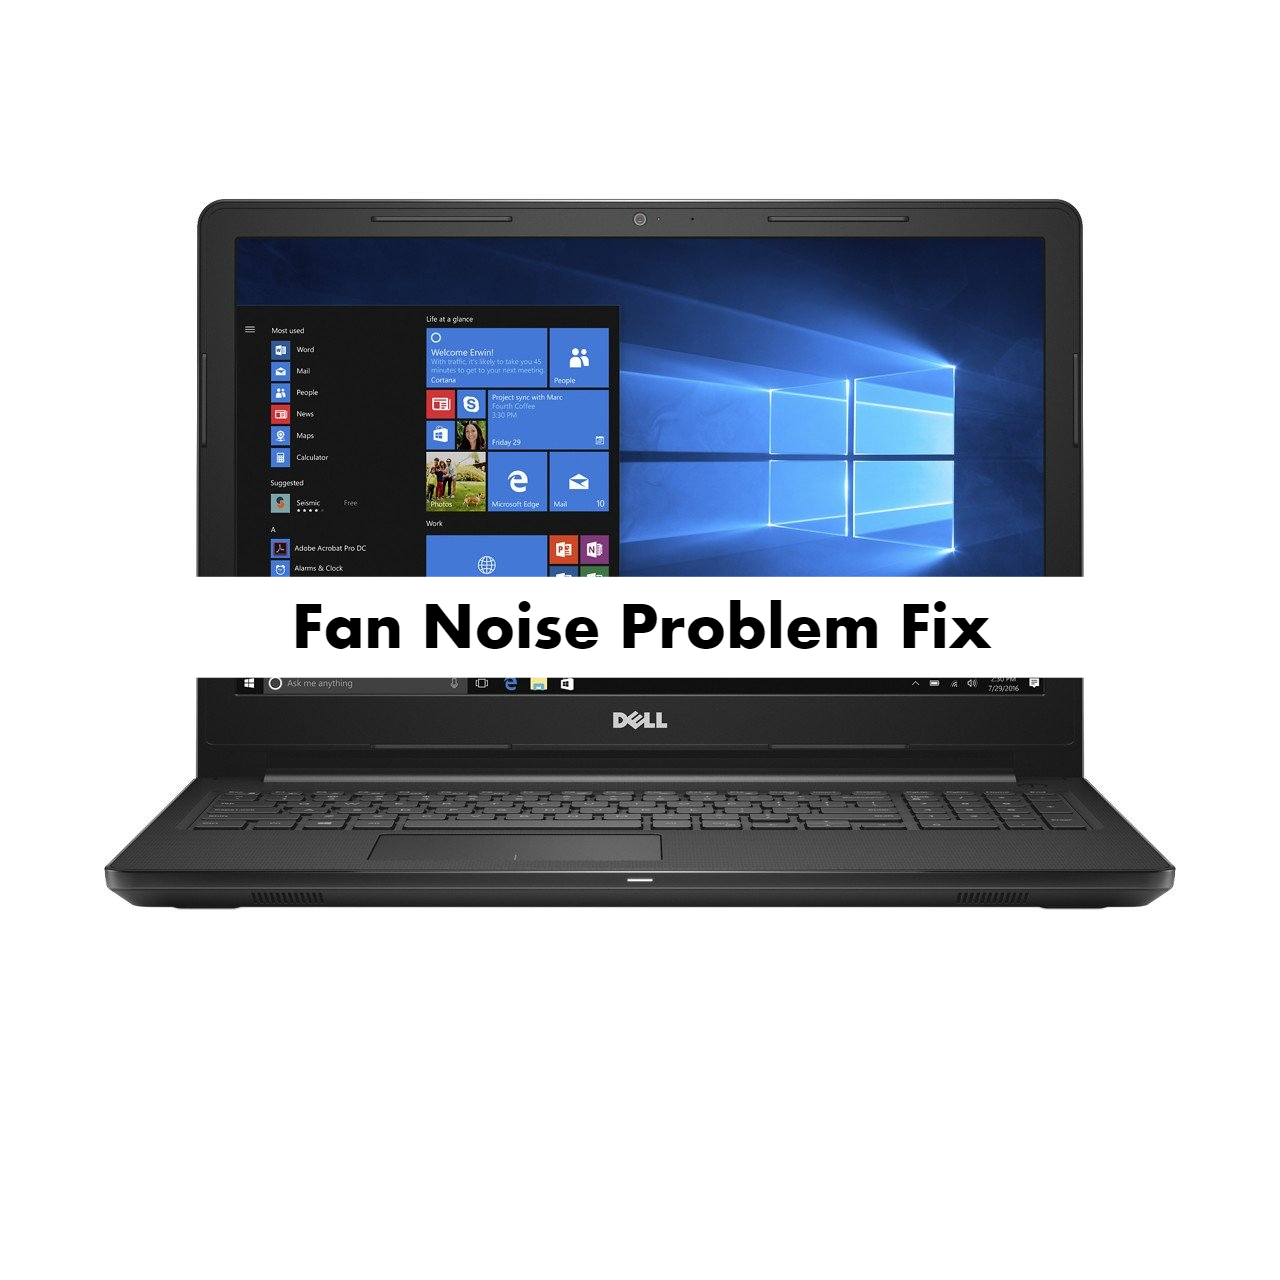 Dell Inspiron 3567 Fan Noise Problem